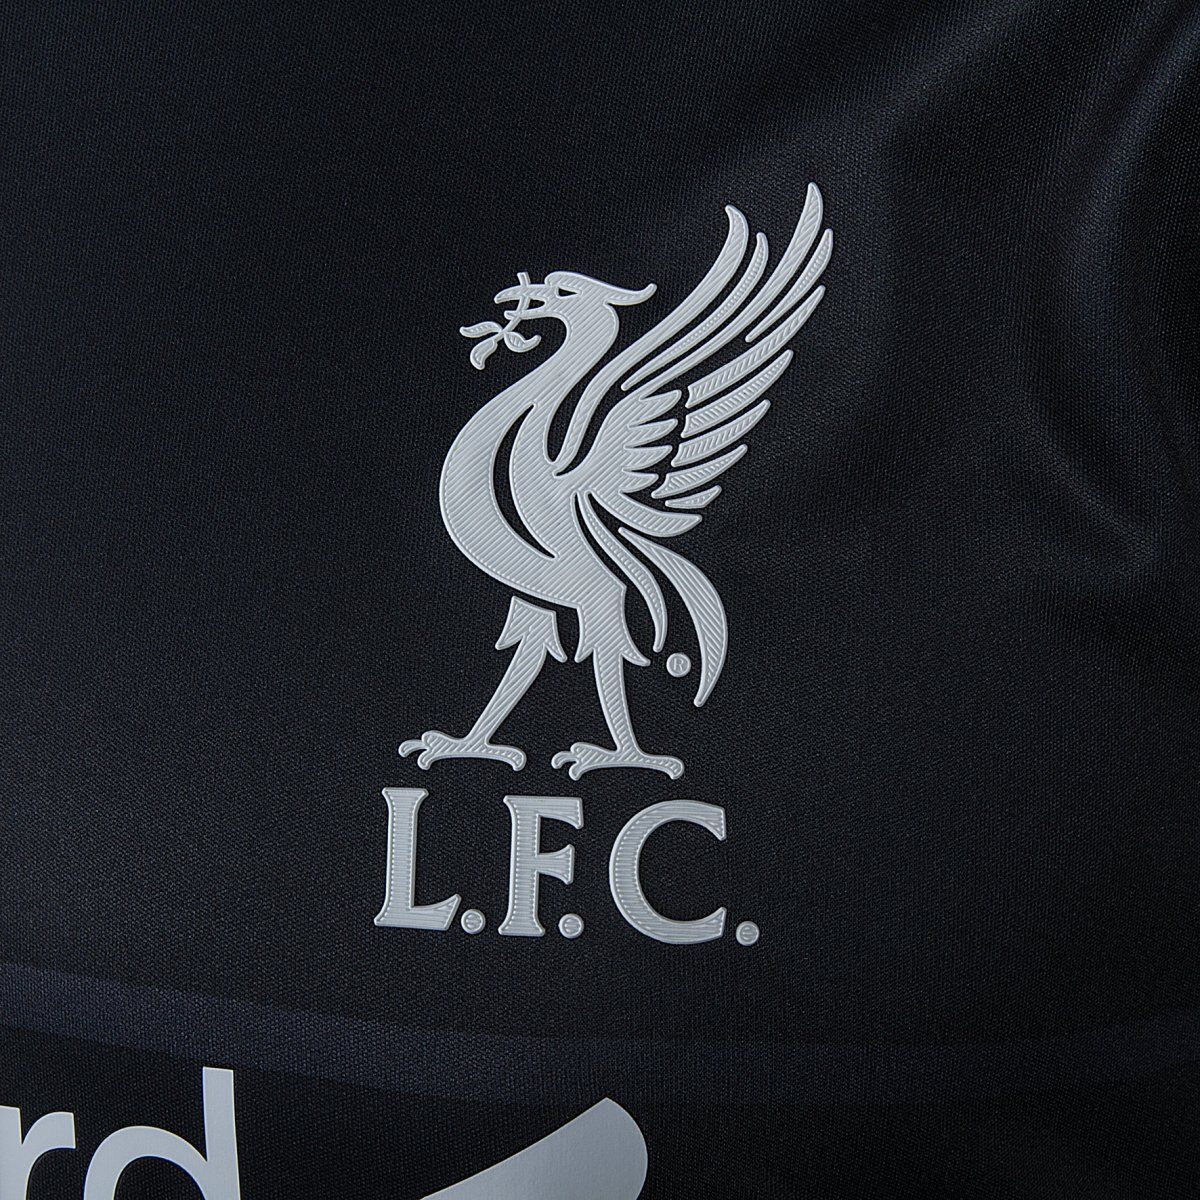 Liverpool FC derde shirt seizoen 2015/2016